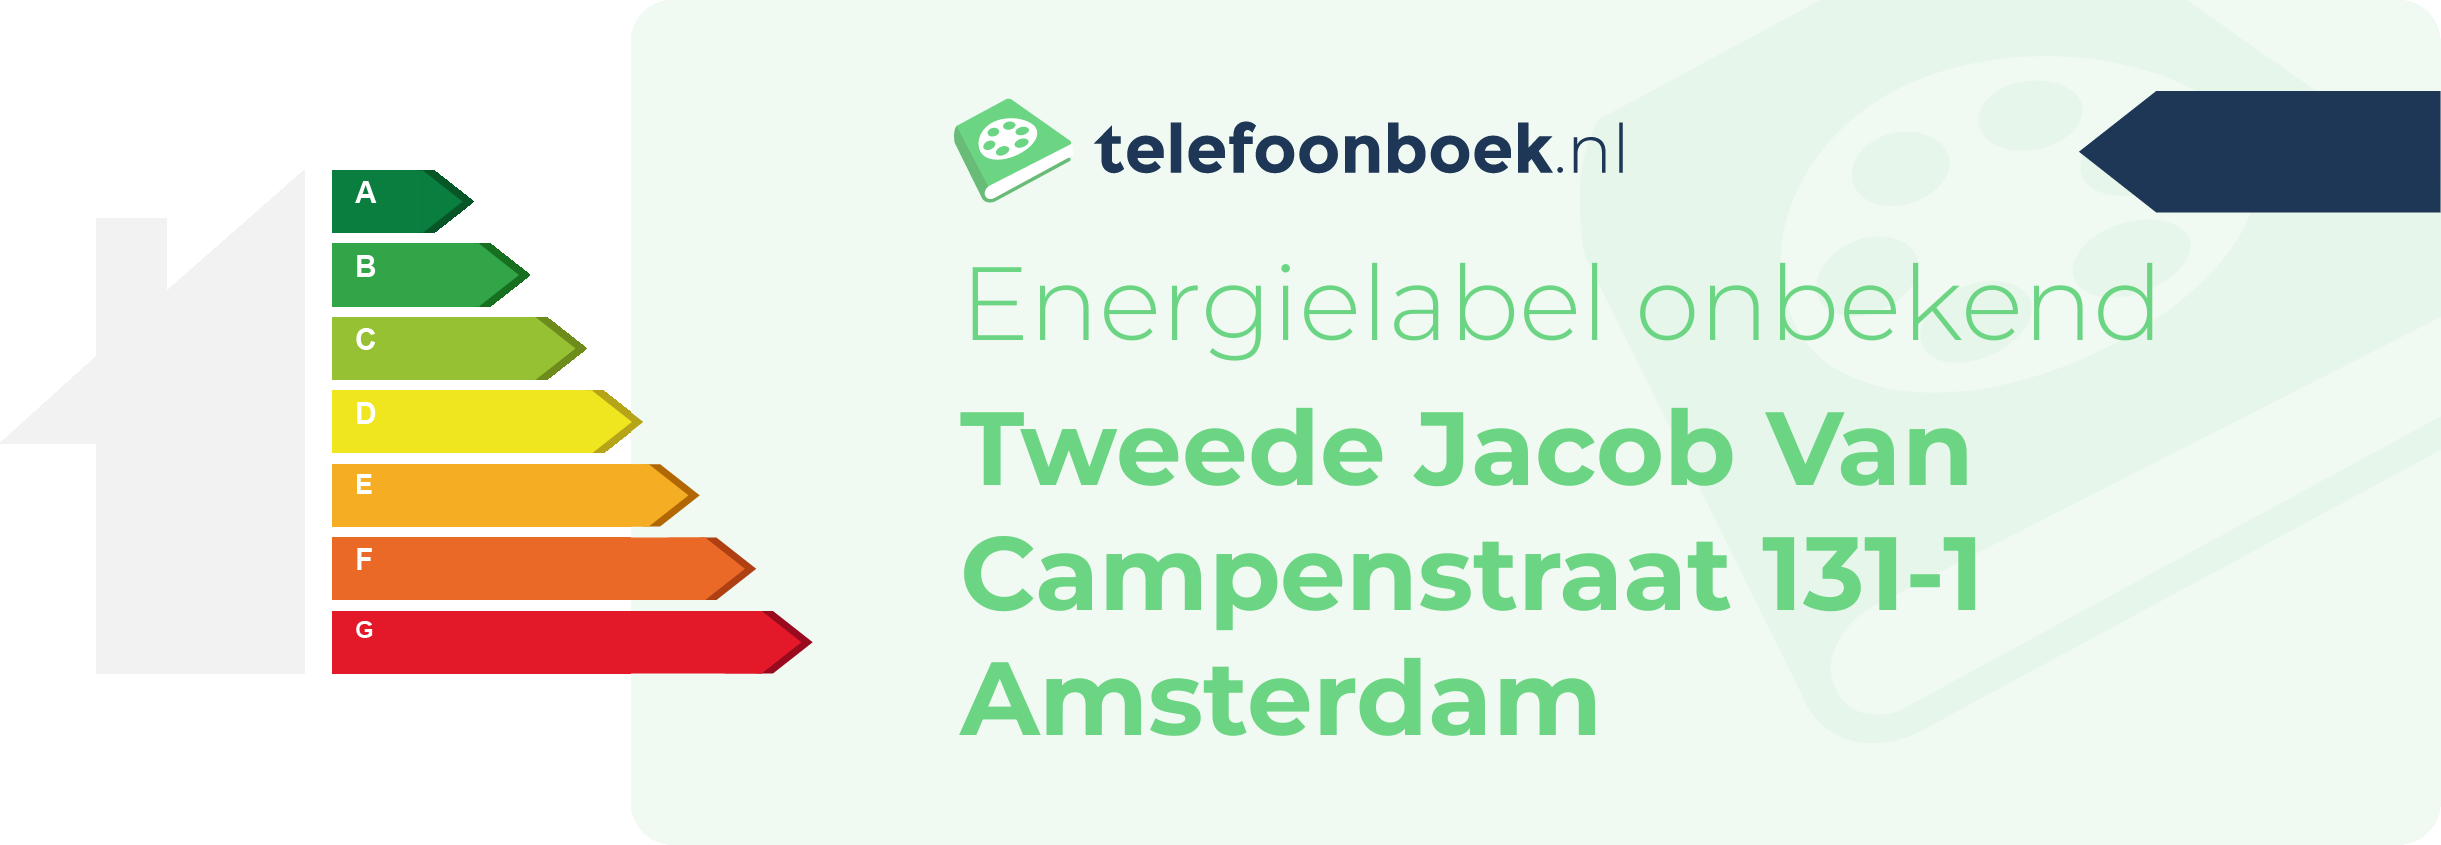 Energielabel Tweede Jacob Van Campenstraat 131-1 Amsterdam